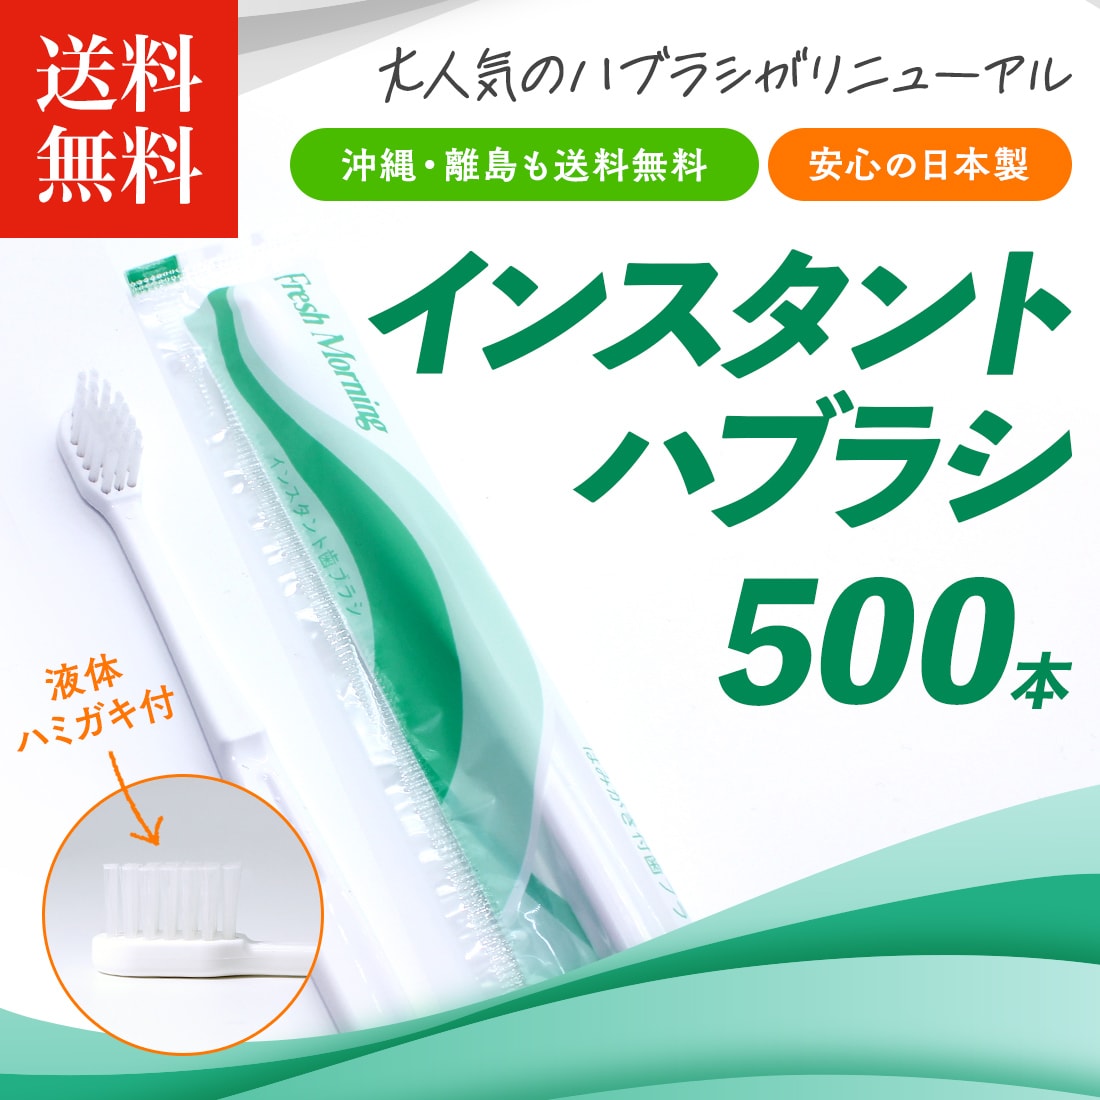 使い捨て歯ブラシ 歯磨き粉5gチューブ付き50本入り 日本製